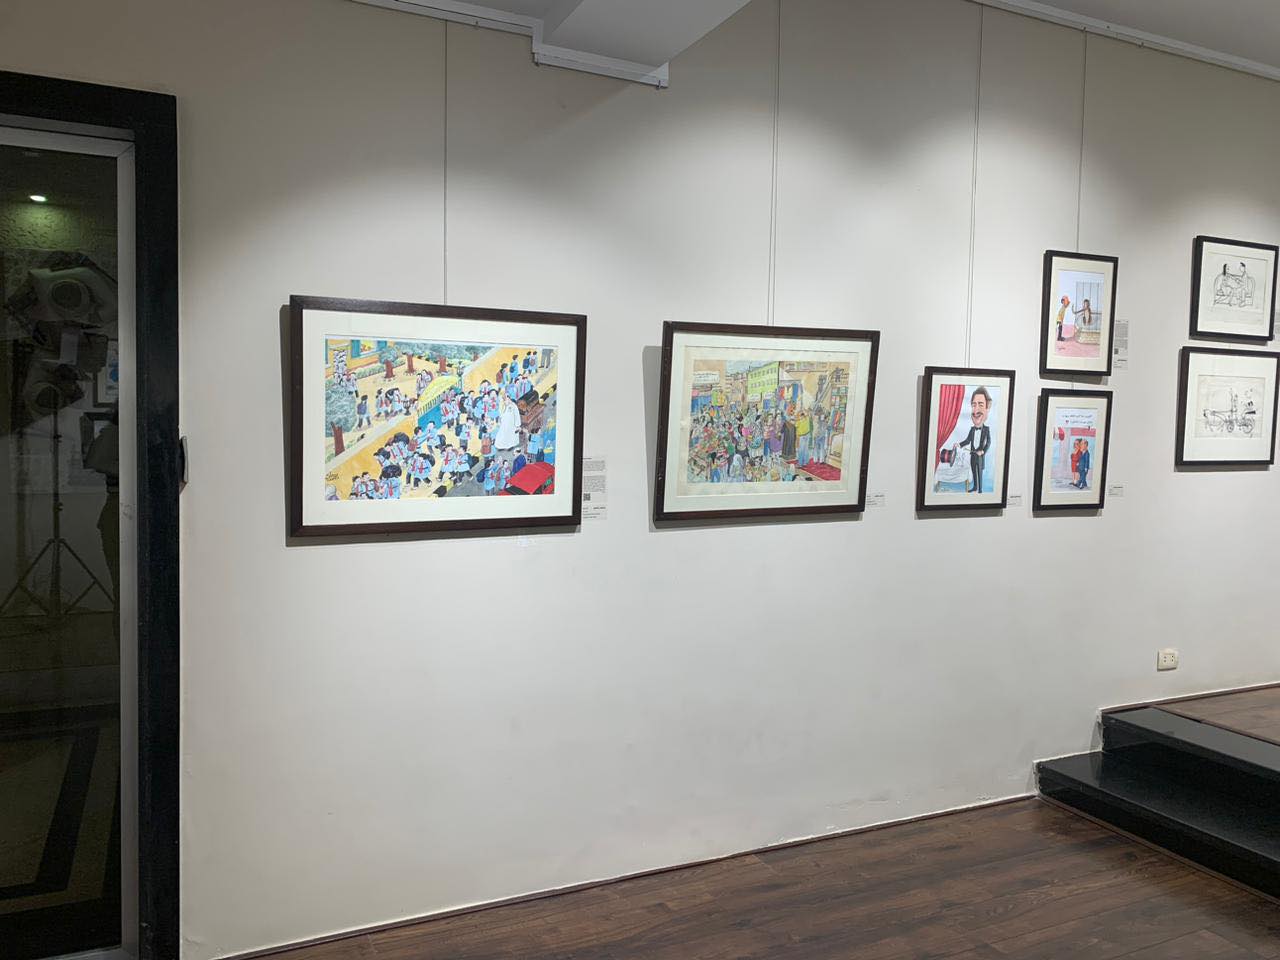  معرض للفنان جورج بهجوري وفناني الكاريكاتير بحضور عدد من الفنانين التشكيليين.